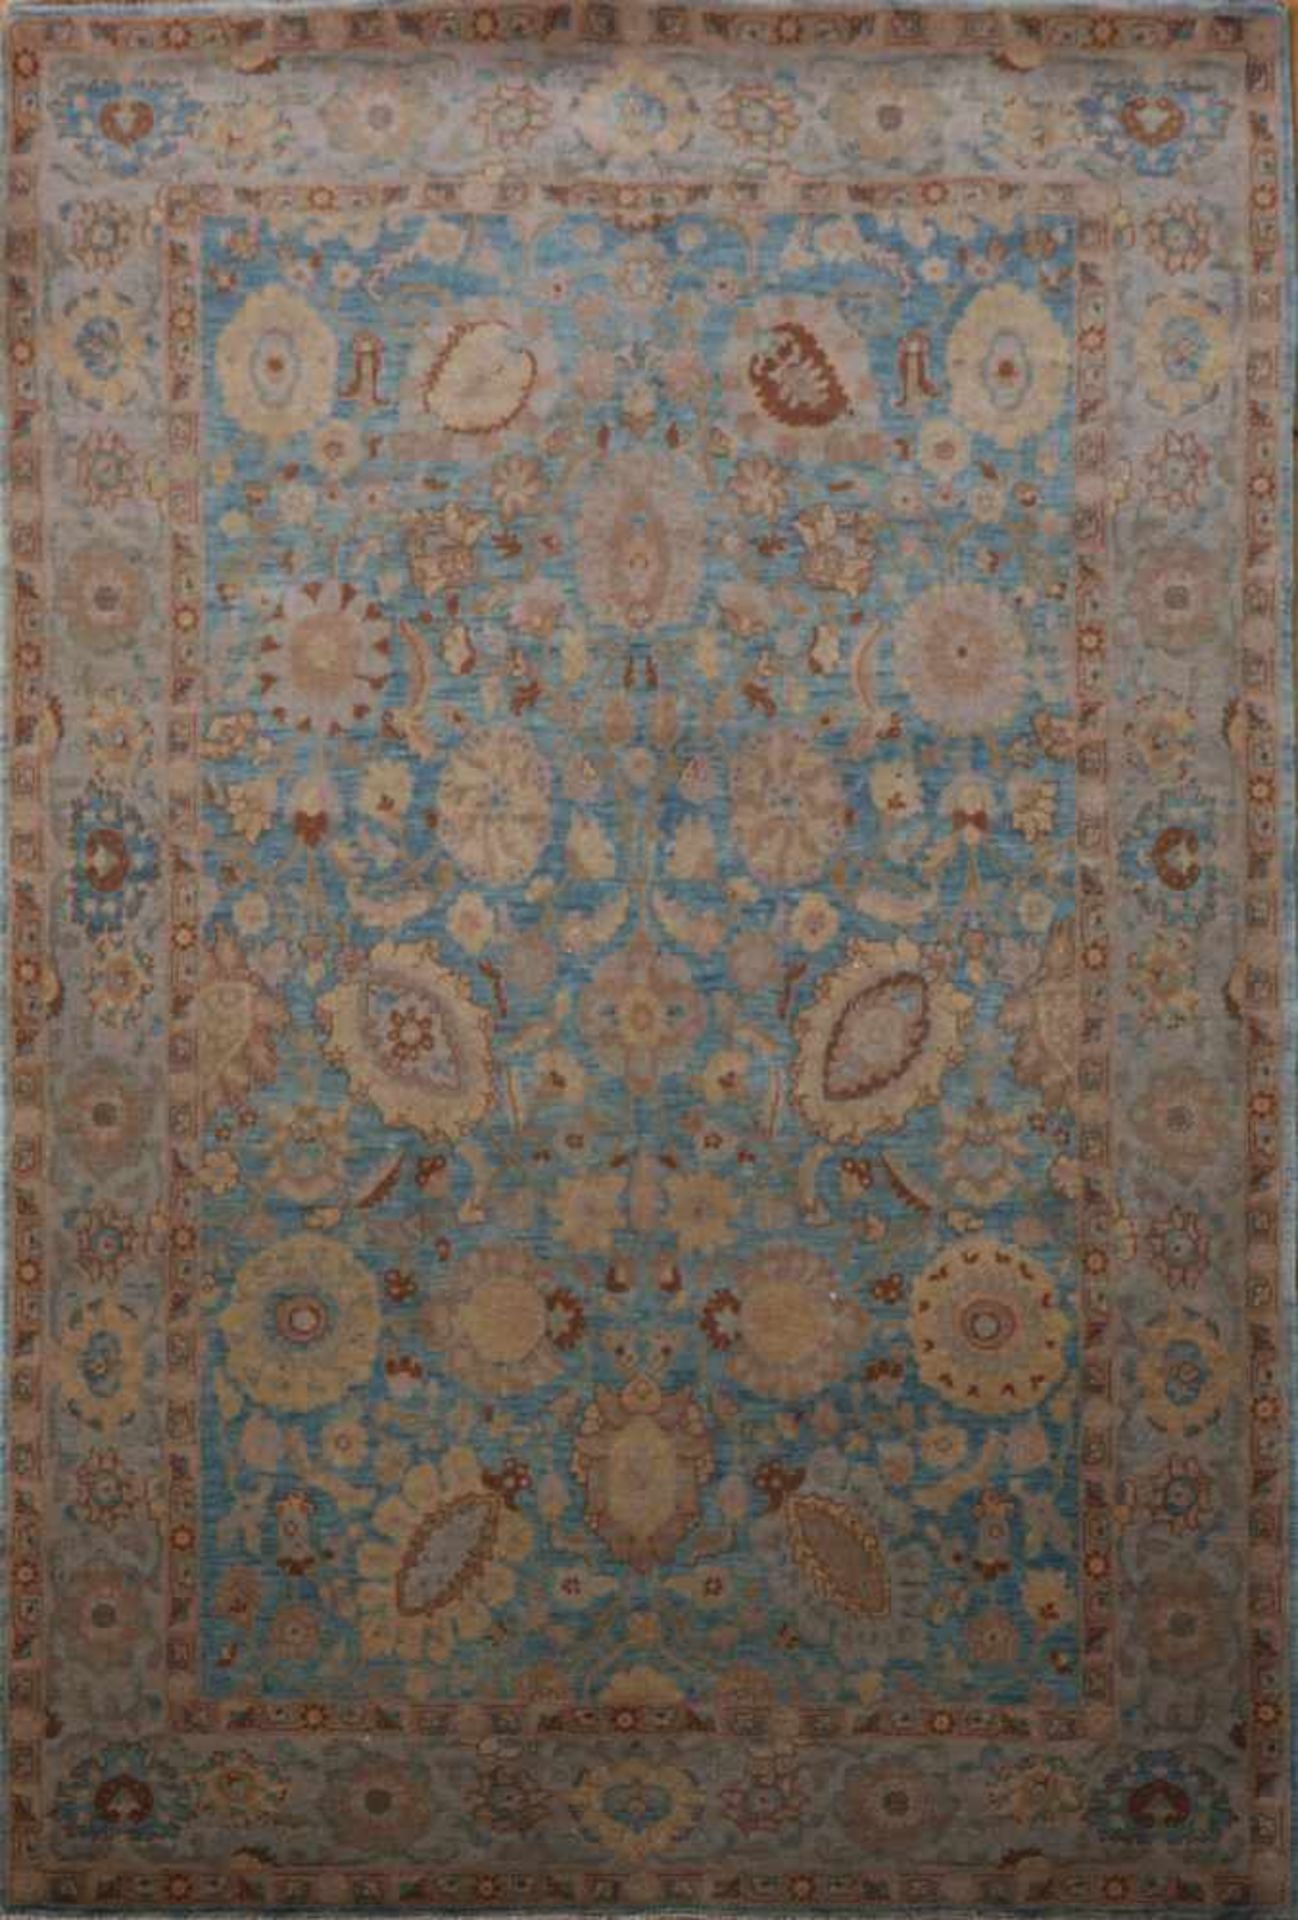 Teppich, TäbrizKorkwolle mit Naturfarben, blaugrundig (hell, antikisiert) mit beigem Blüten- und